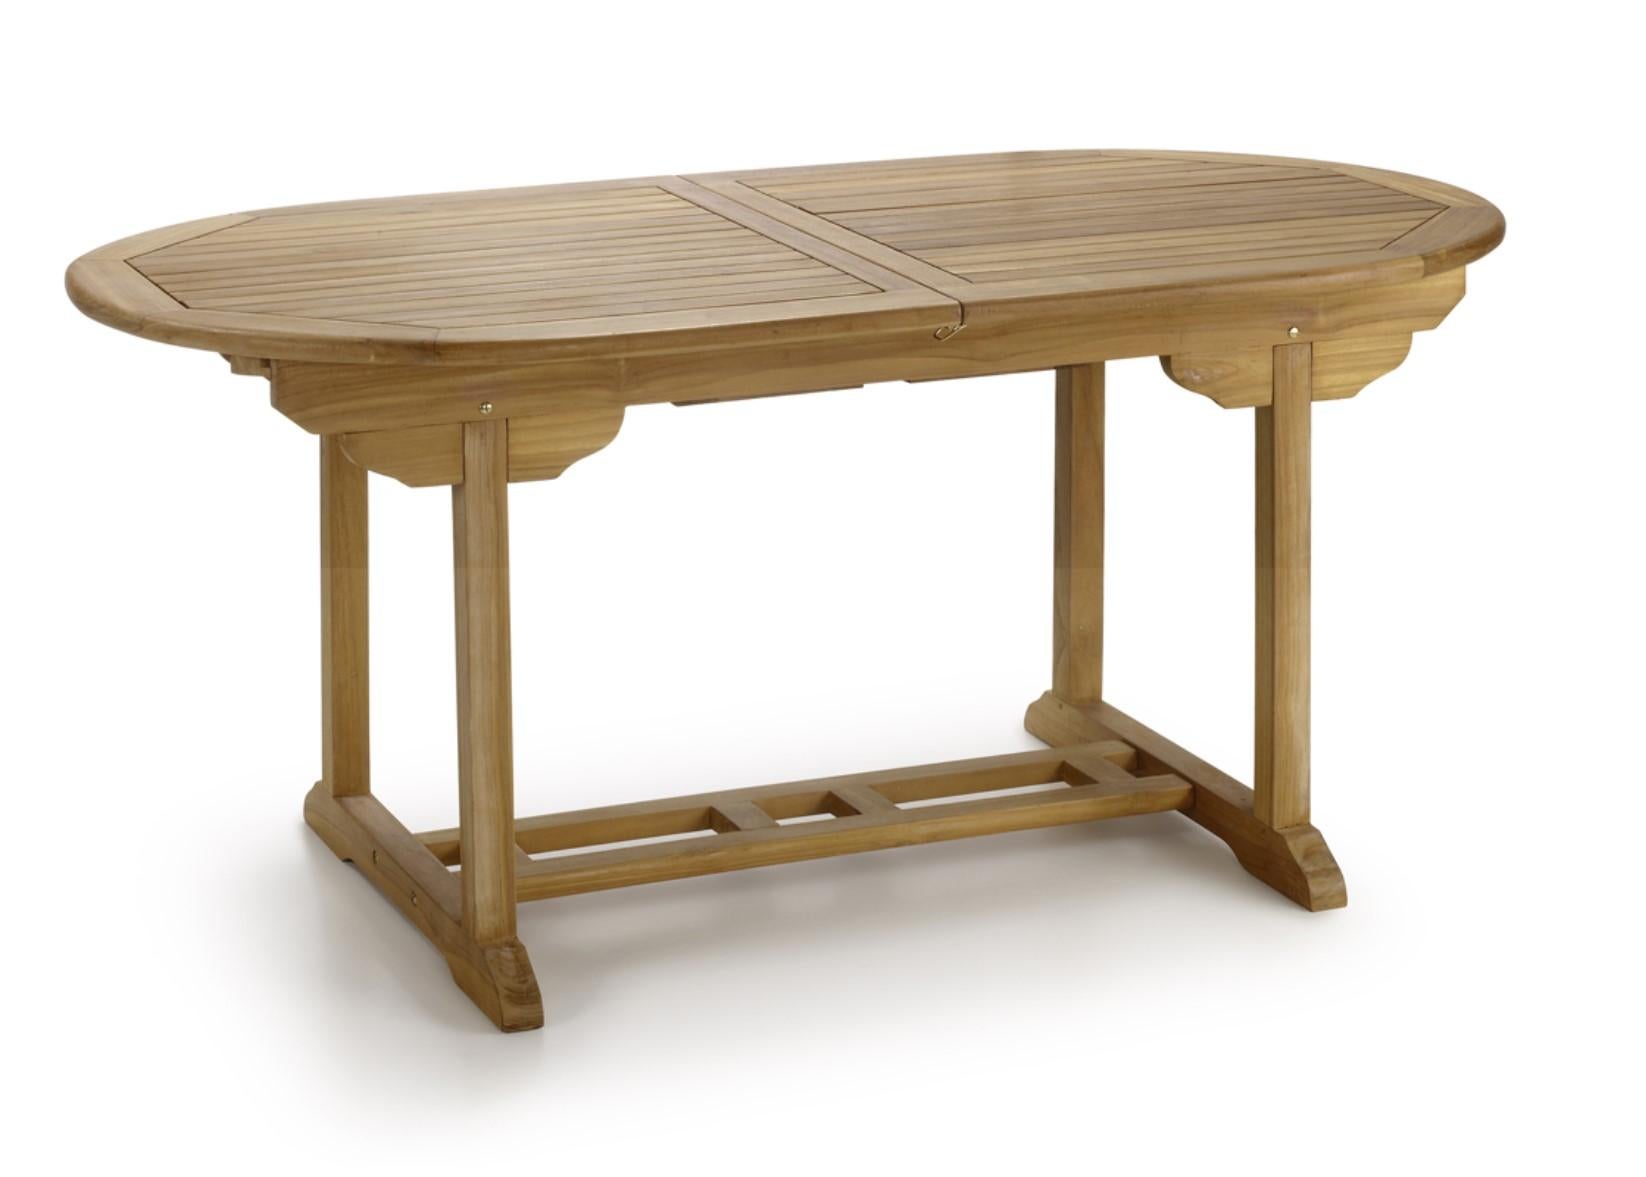 Nouvelle table à manger ronde pliable en teck, pour l'intérieur et l'extérieur

Extensible : 66.92in-86.61in.